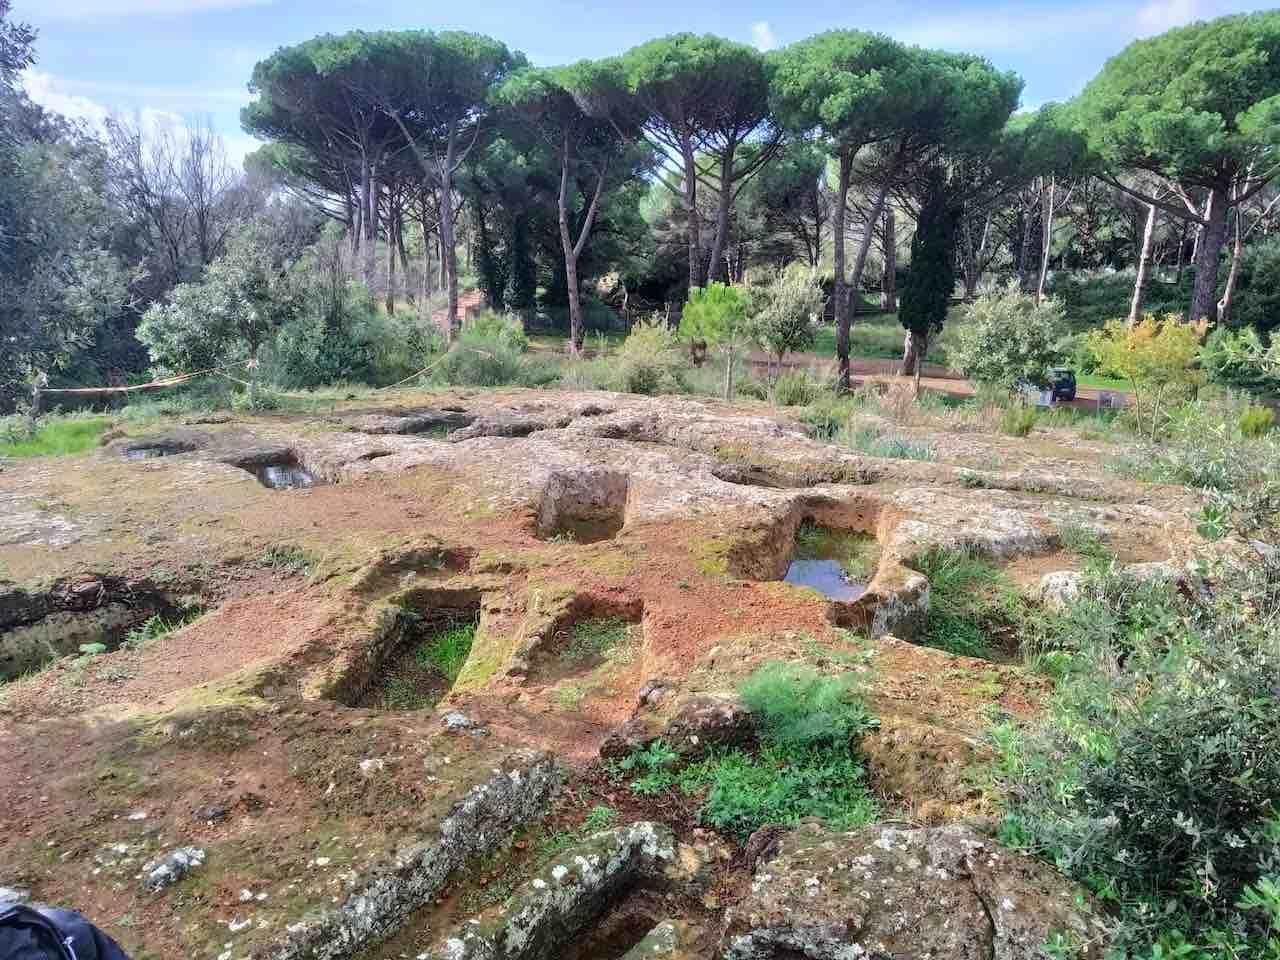 Etruscan Necropolis